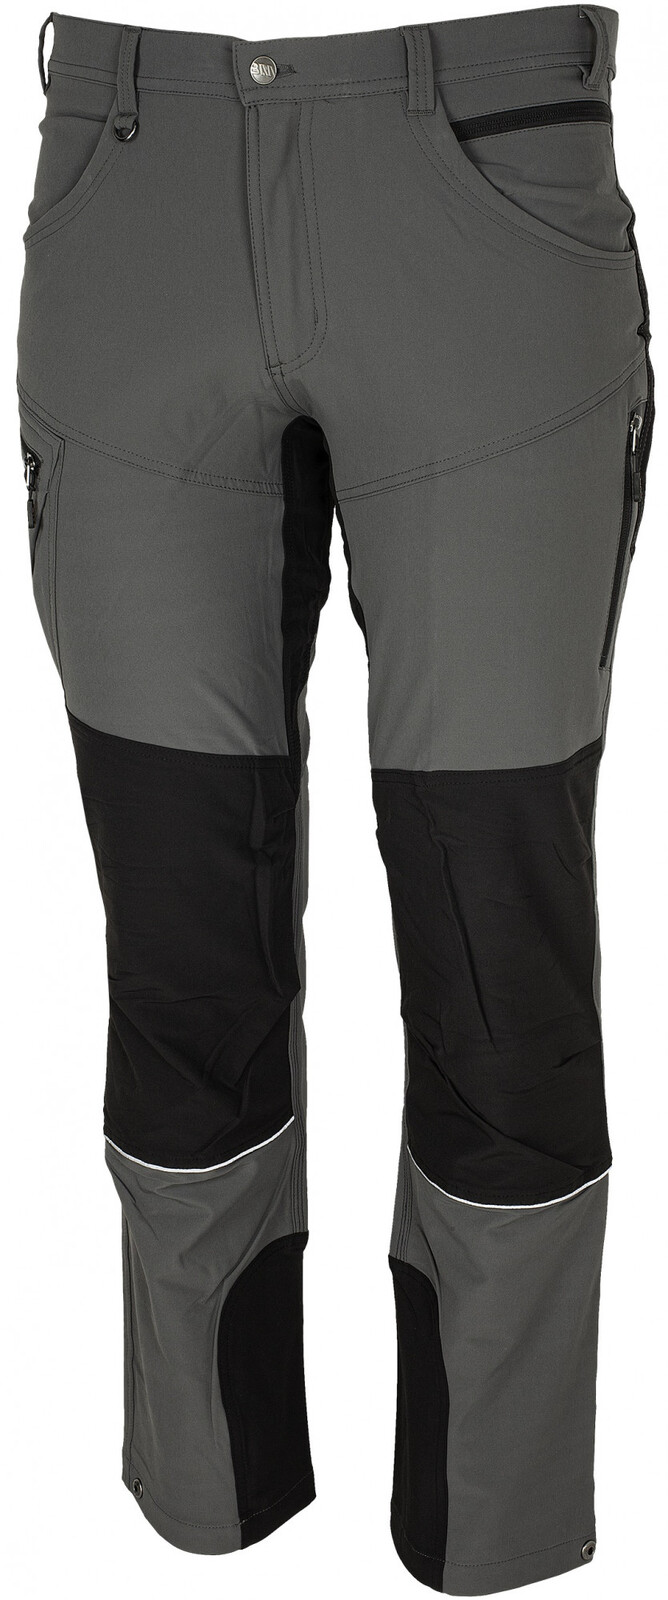 Pánske strečové nohavice Bennon Fobos - veľkosť: 46, farba: sivá/čierna